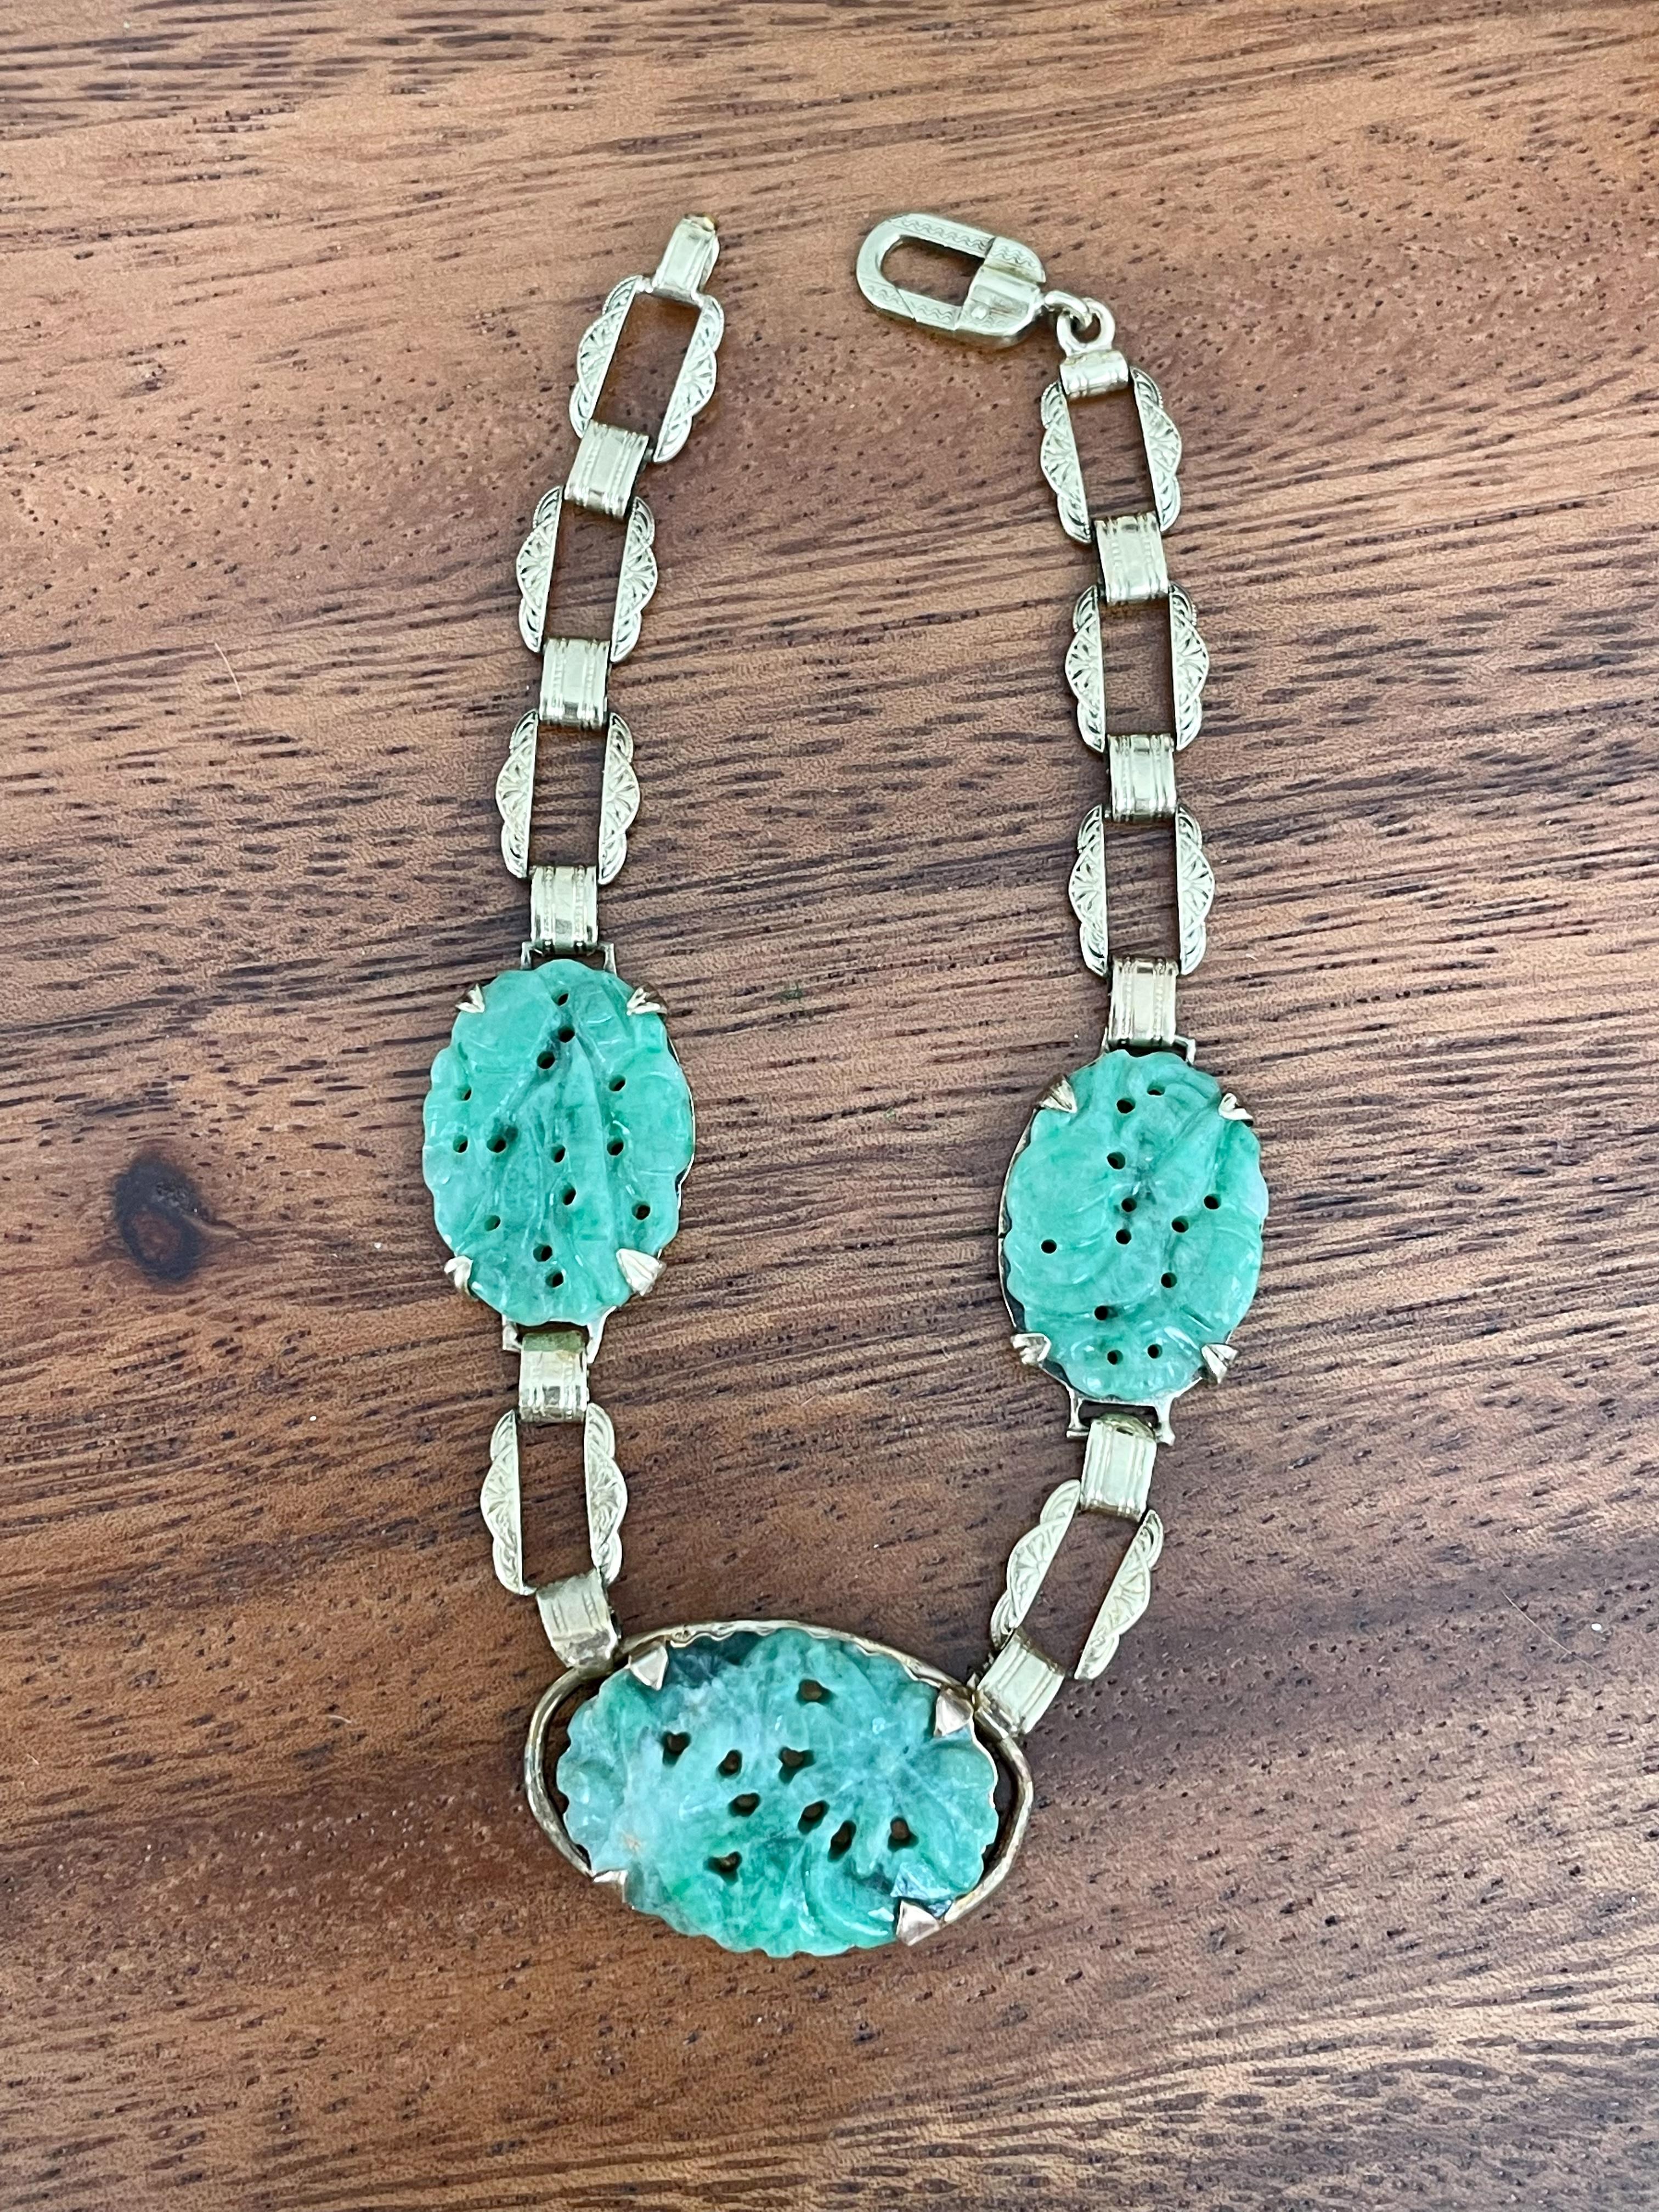 Vintage Art Deco Jadeite Jade Medallion 14 Karat Yellow Gold Link Bracelet For Sale 2